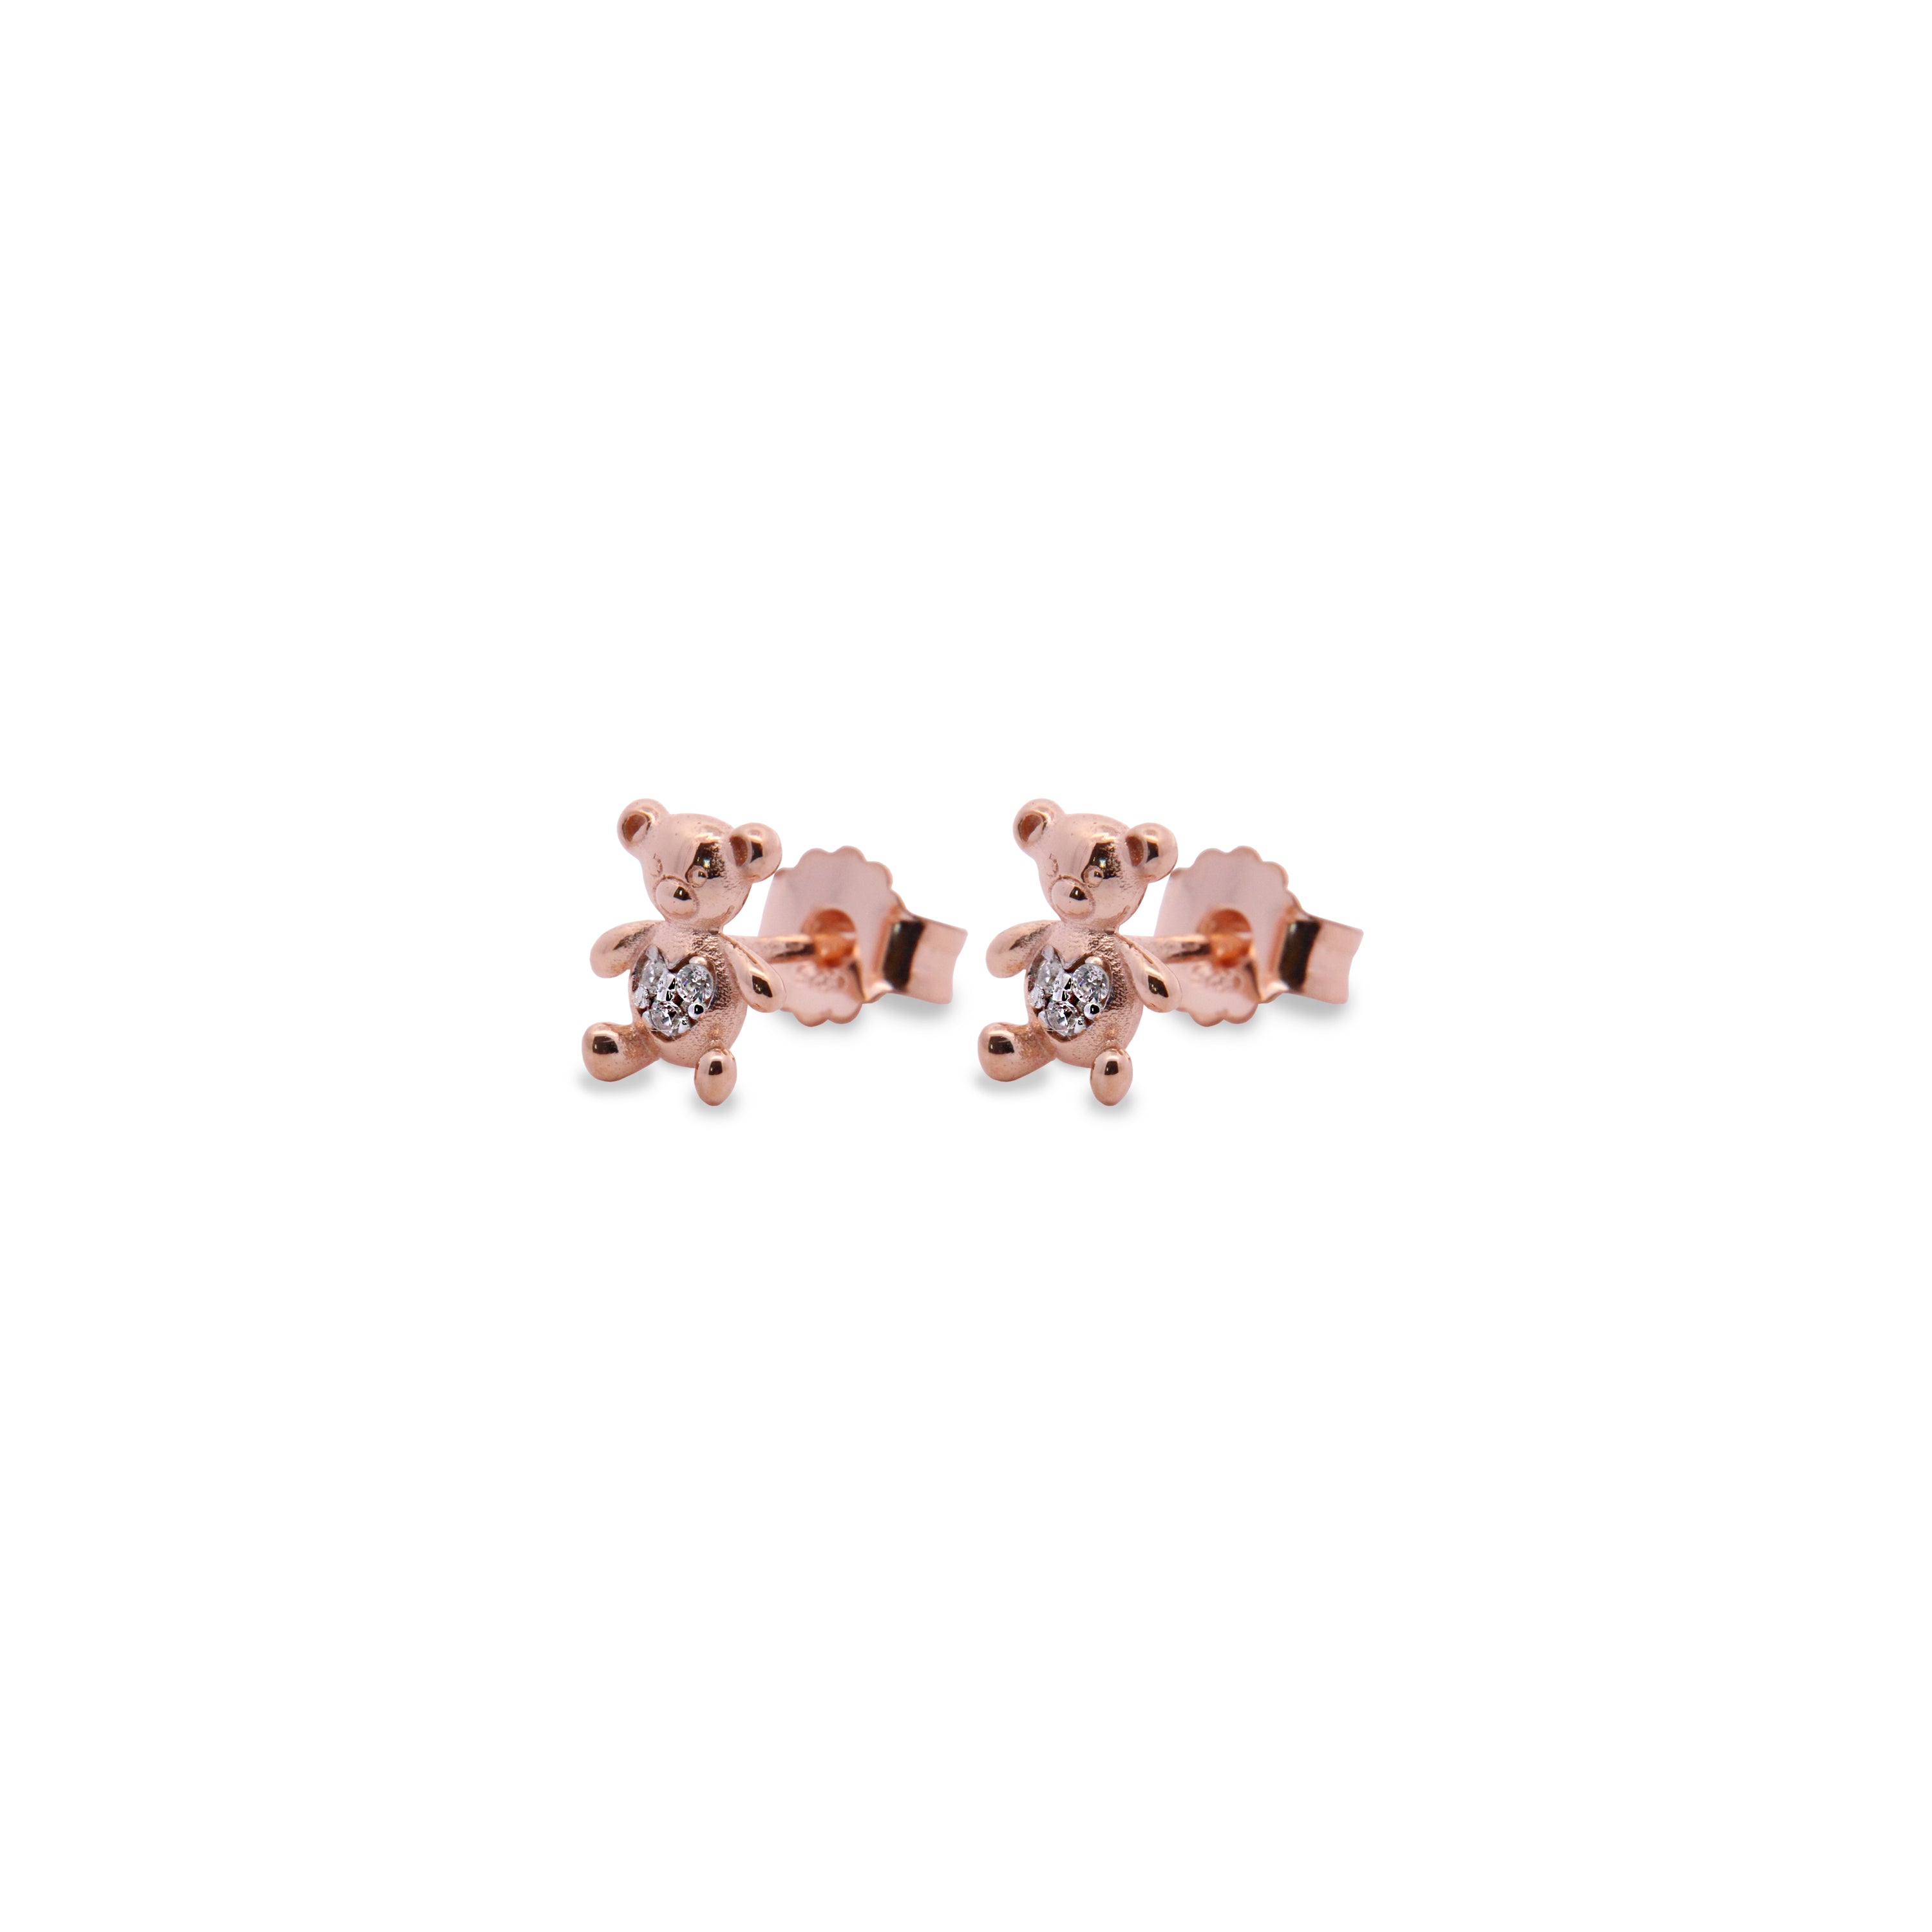 Earrings - Teddy bear zircons lobe earrings - Teddy Fancy - 1 | Rue des Mille